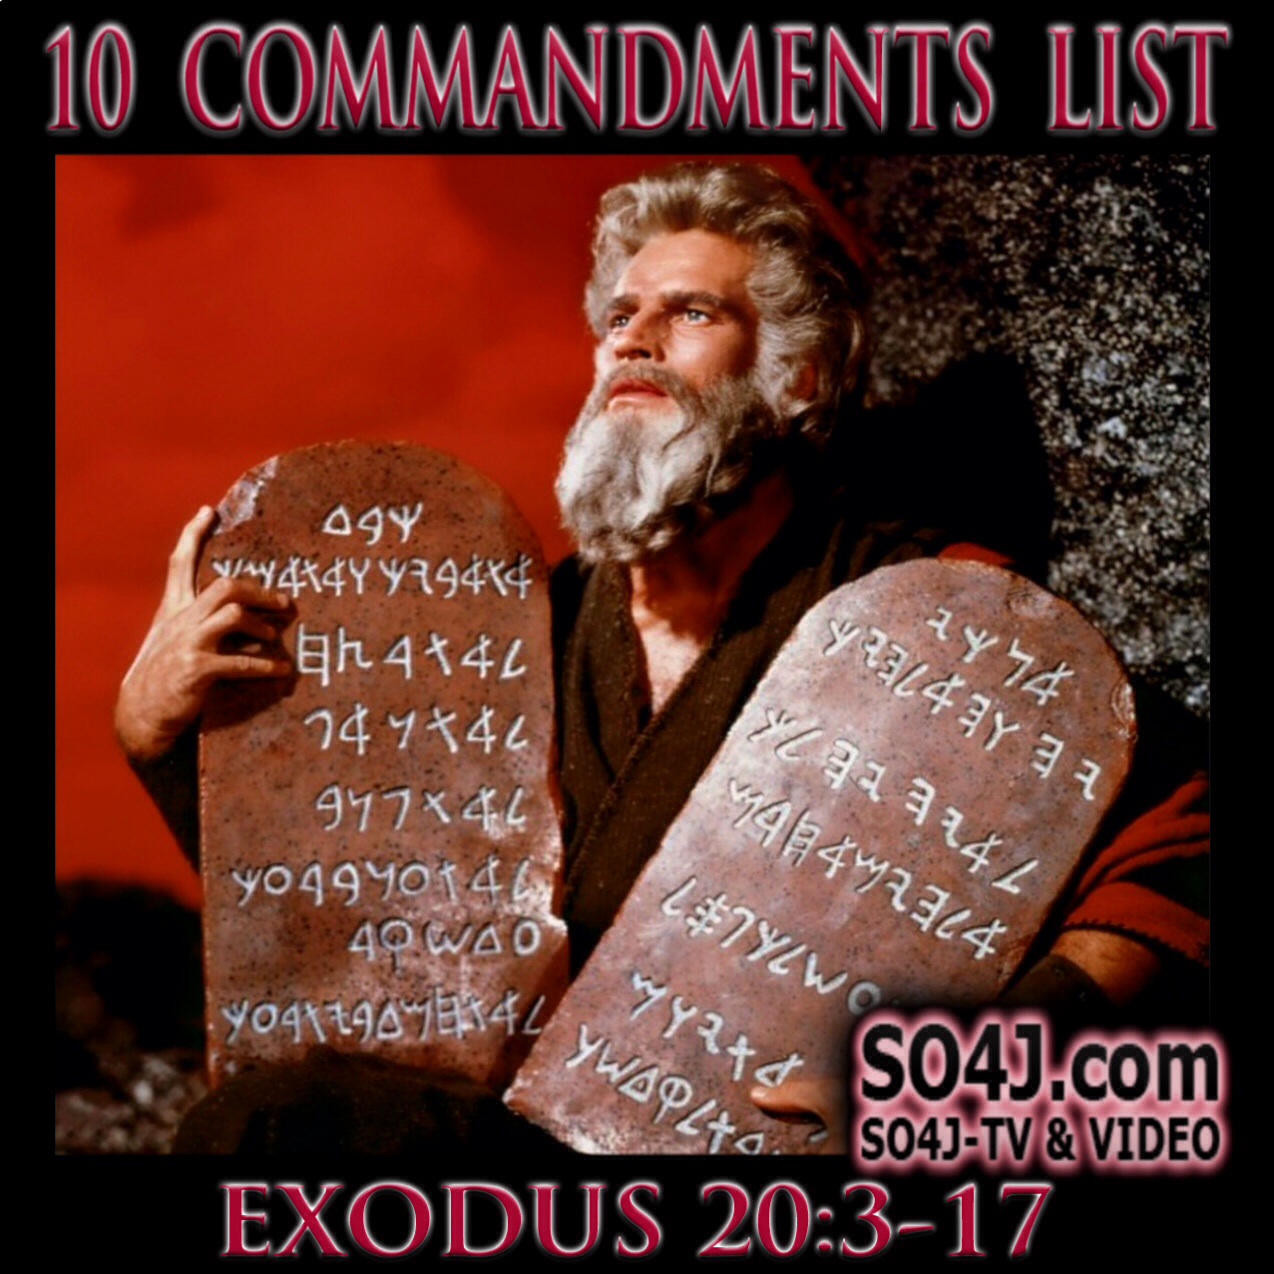 10 Commandments List - SO4J-TV - SO4J.com